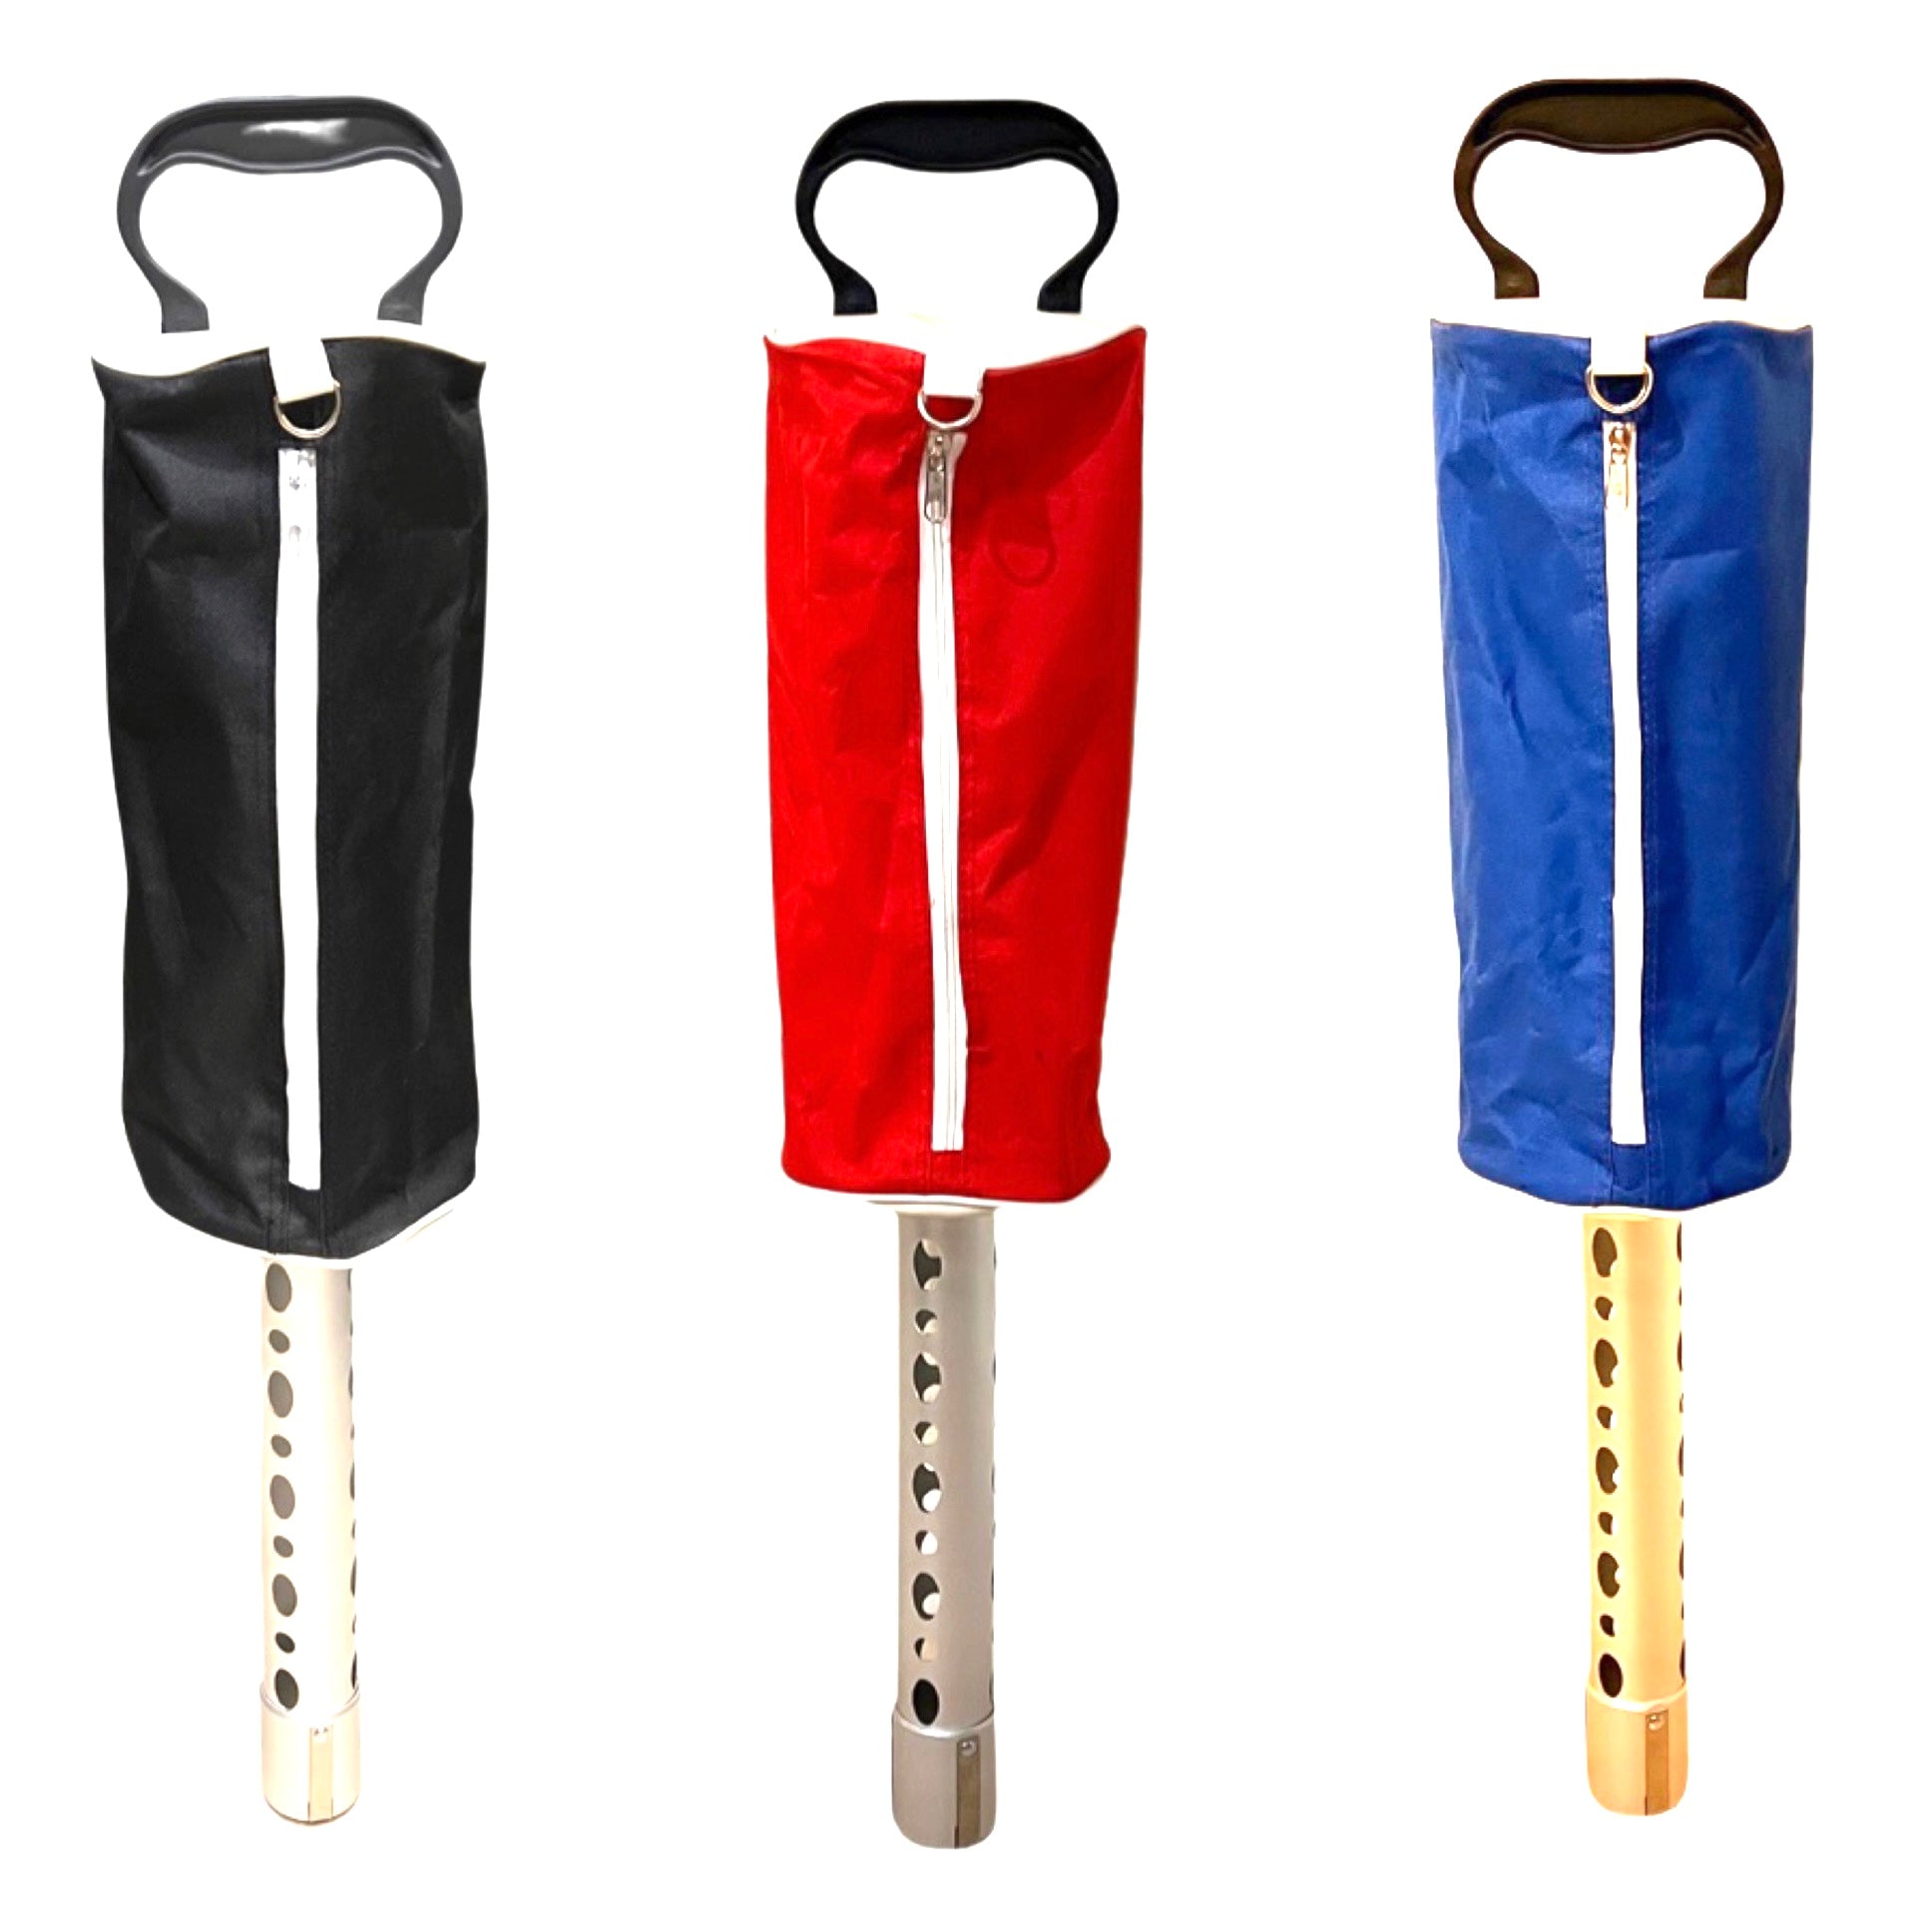 Hochwertige Golf Shag Bag mit Aluminiumrohr – Wählen Sie Schwarz, Blau, Rot